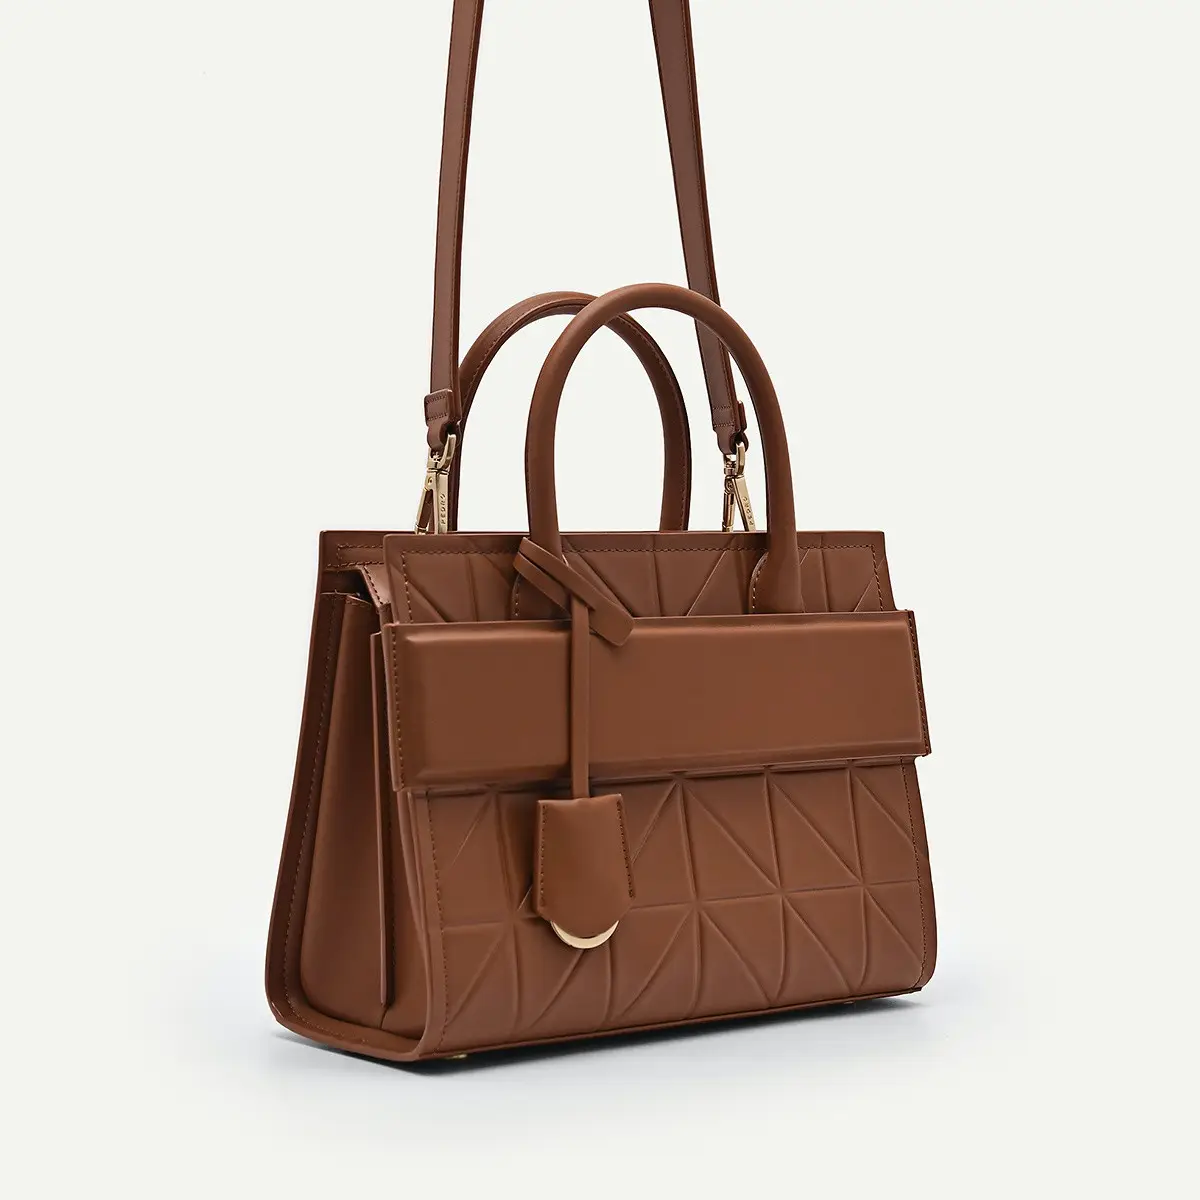 2023 New arrivals brand handbags fashion satchel bags women handbags ladies tote bag